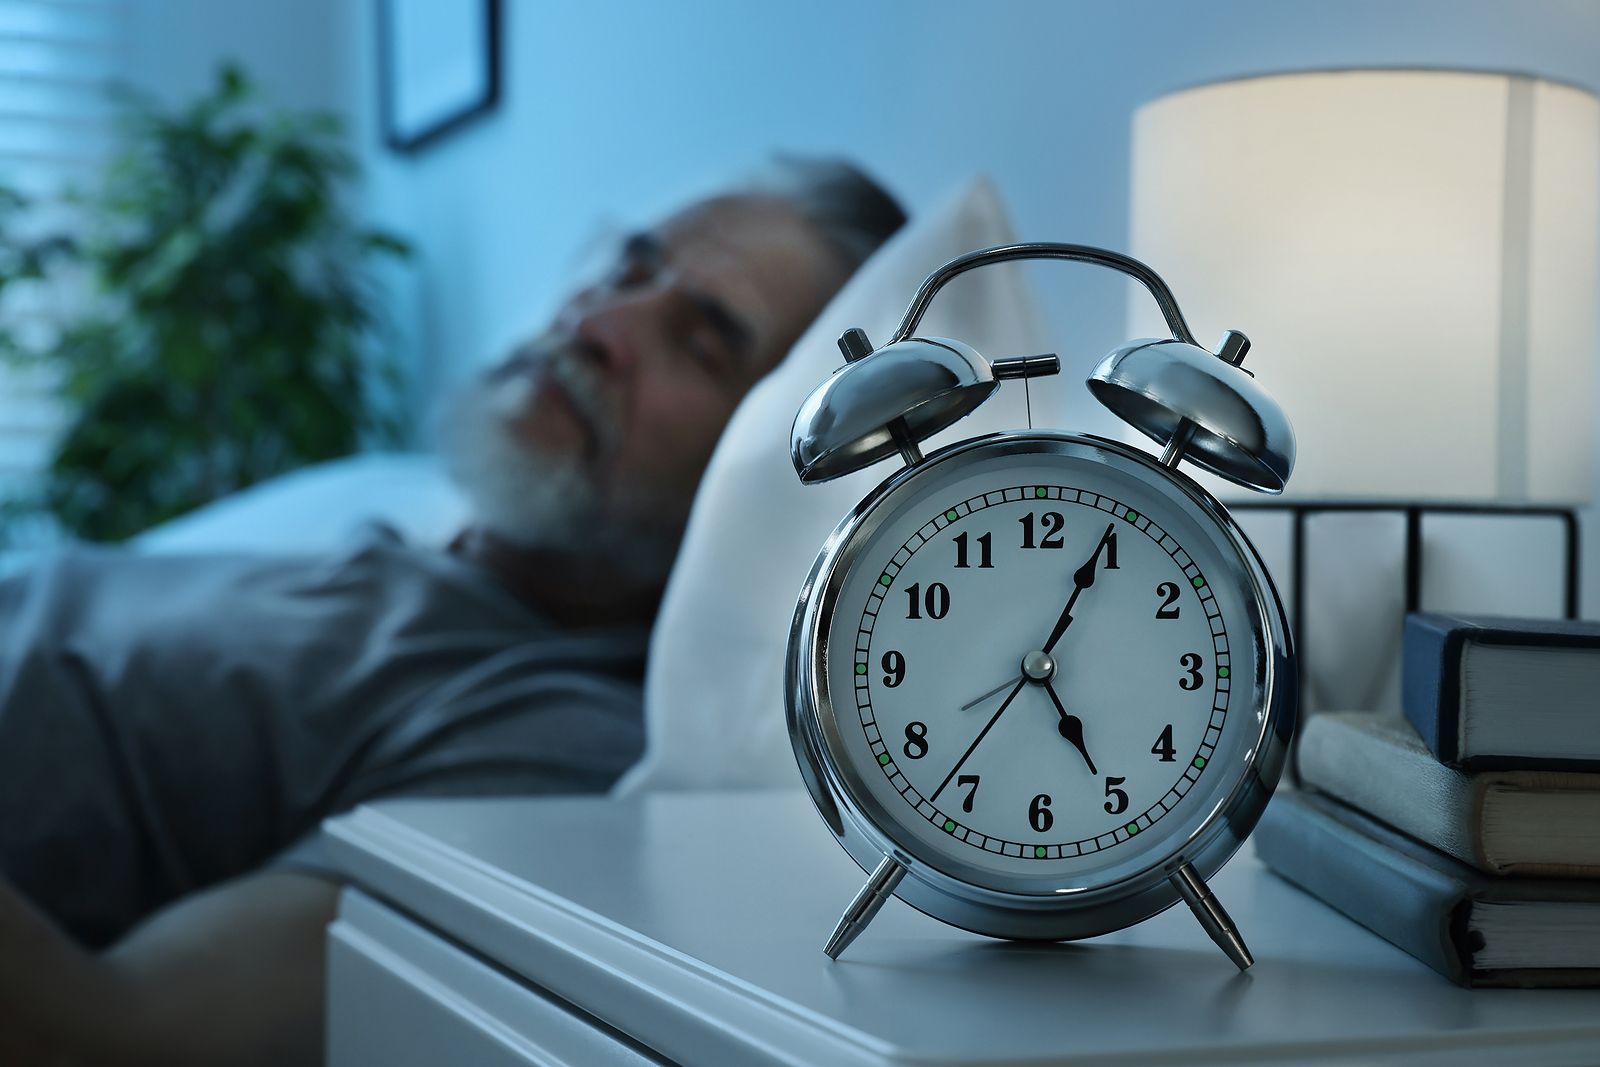 Dormir poco también afecta a la efectividad de las vacunas